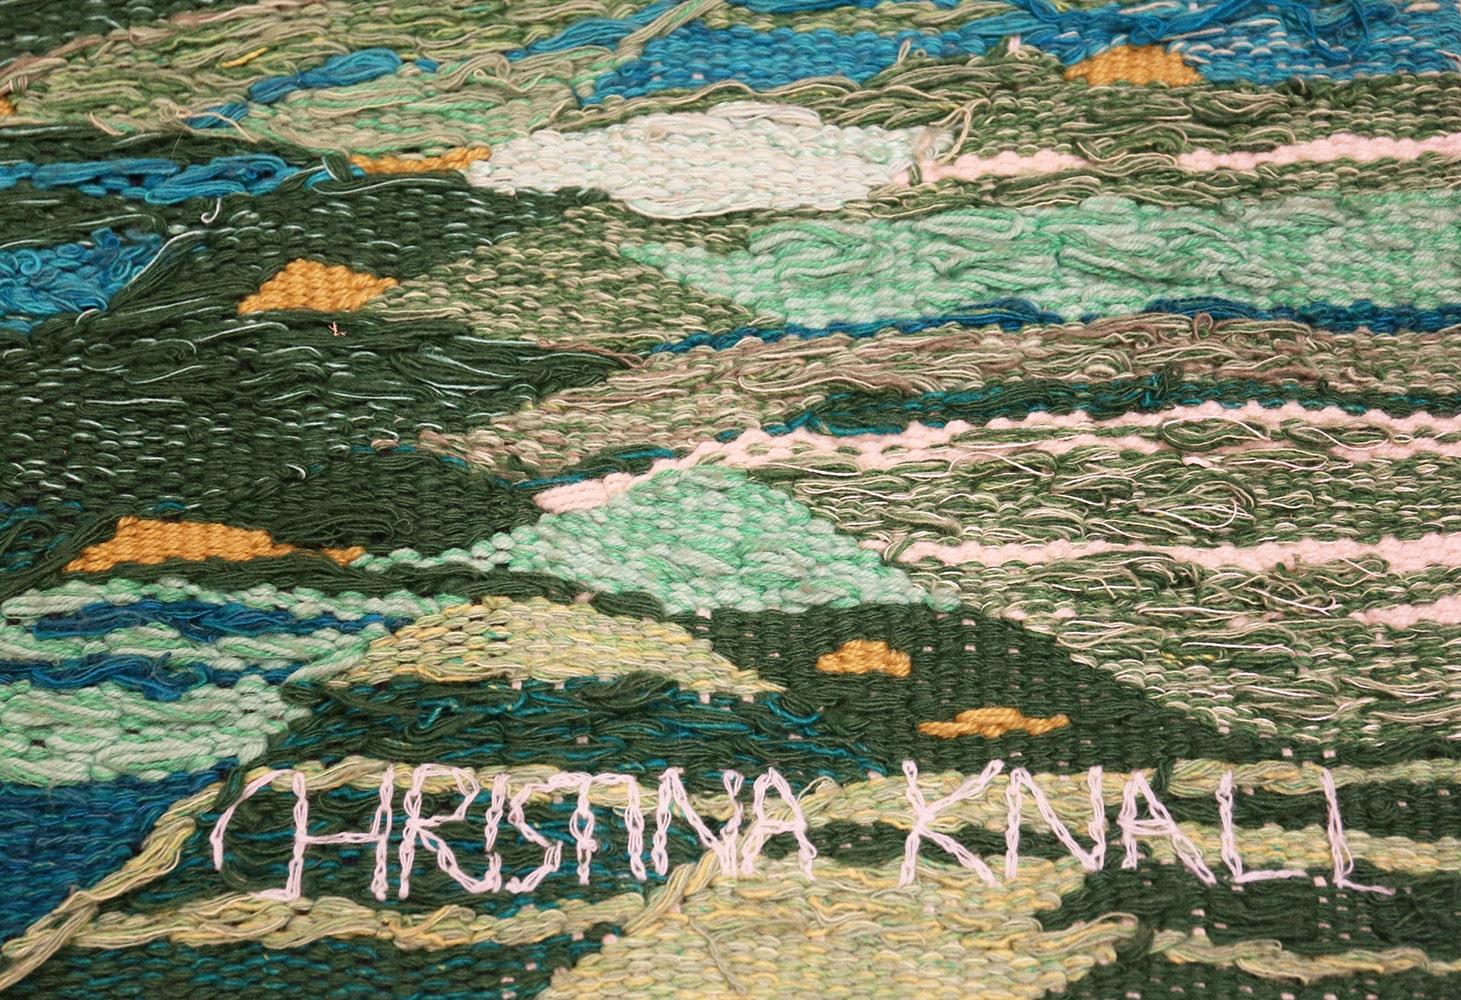 Skandinavischer Wandteppich von Christina Knall, Herkunft: Skandinavien, ca. Datum: Mitte des 20. Jahrhunderts. Größe: 3 ft 10 in x 5 ft (1,17 m x 1,52 m)

